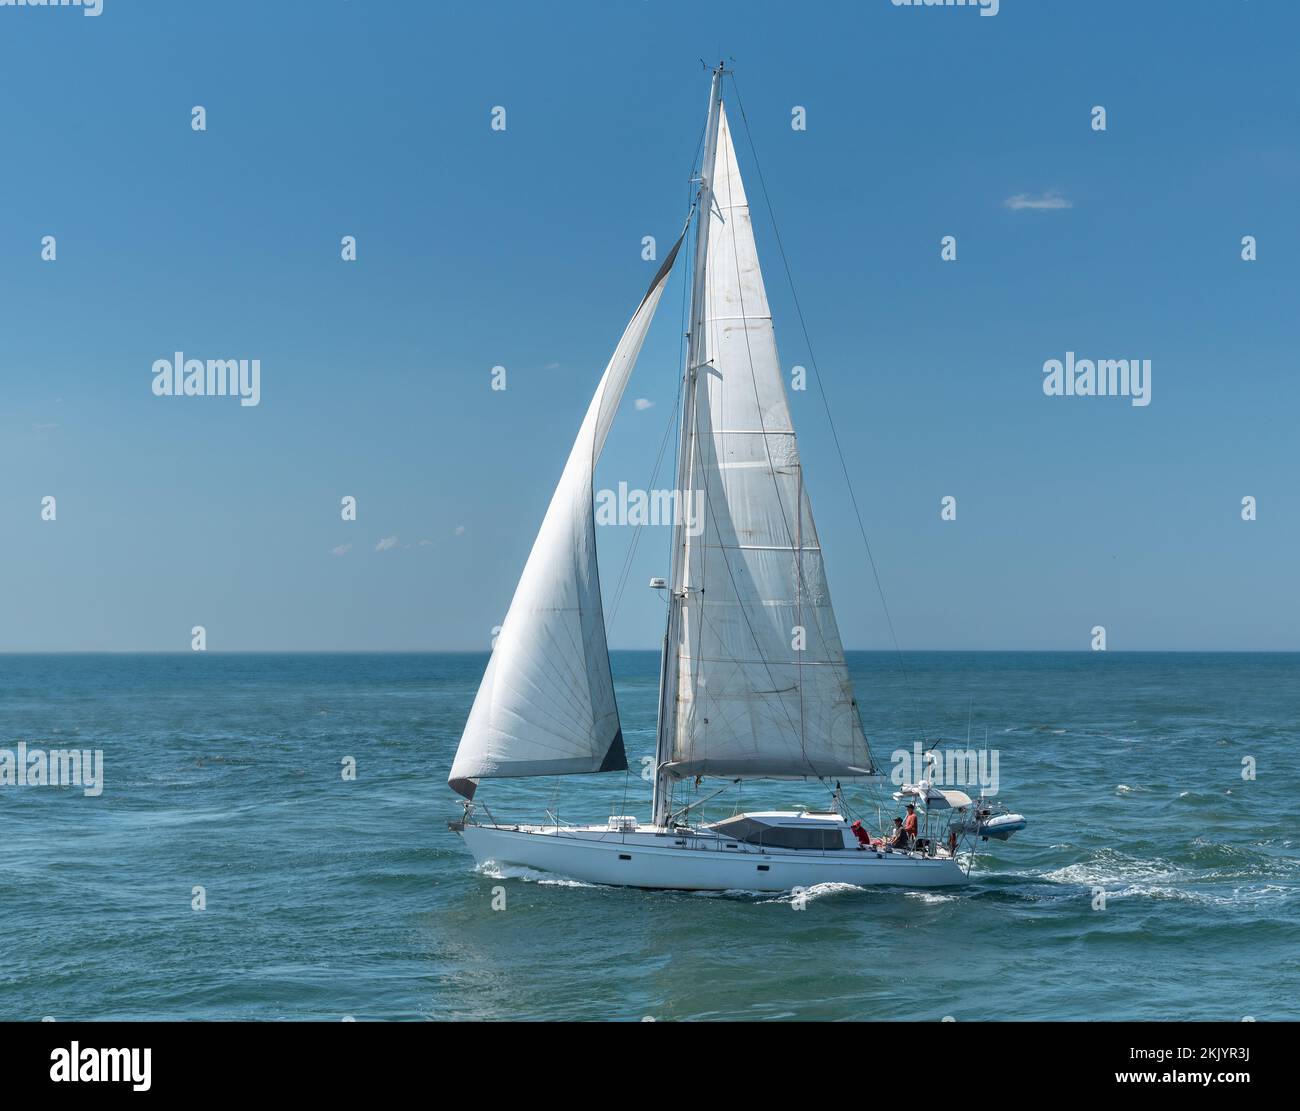 Un yacht blanc sous la voile sur l'océan avec trois personnes non identifiées à bord. Banque D'Images